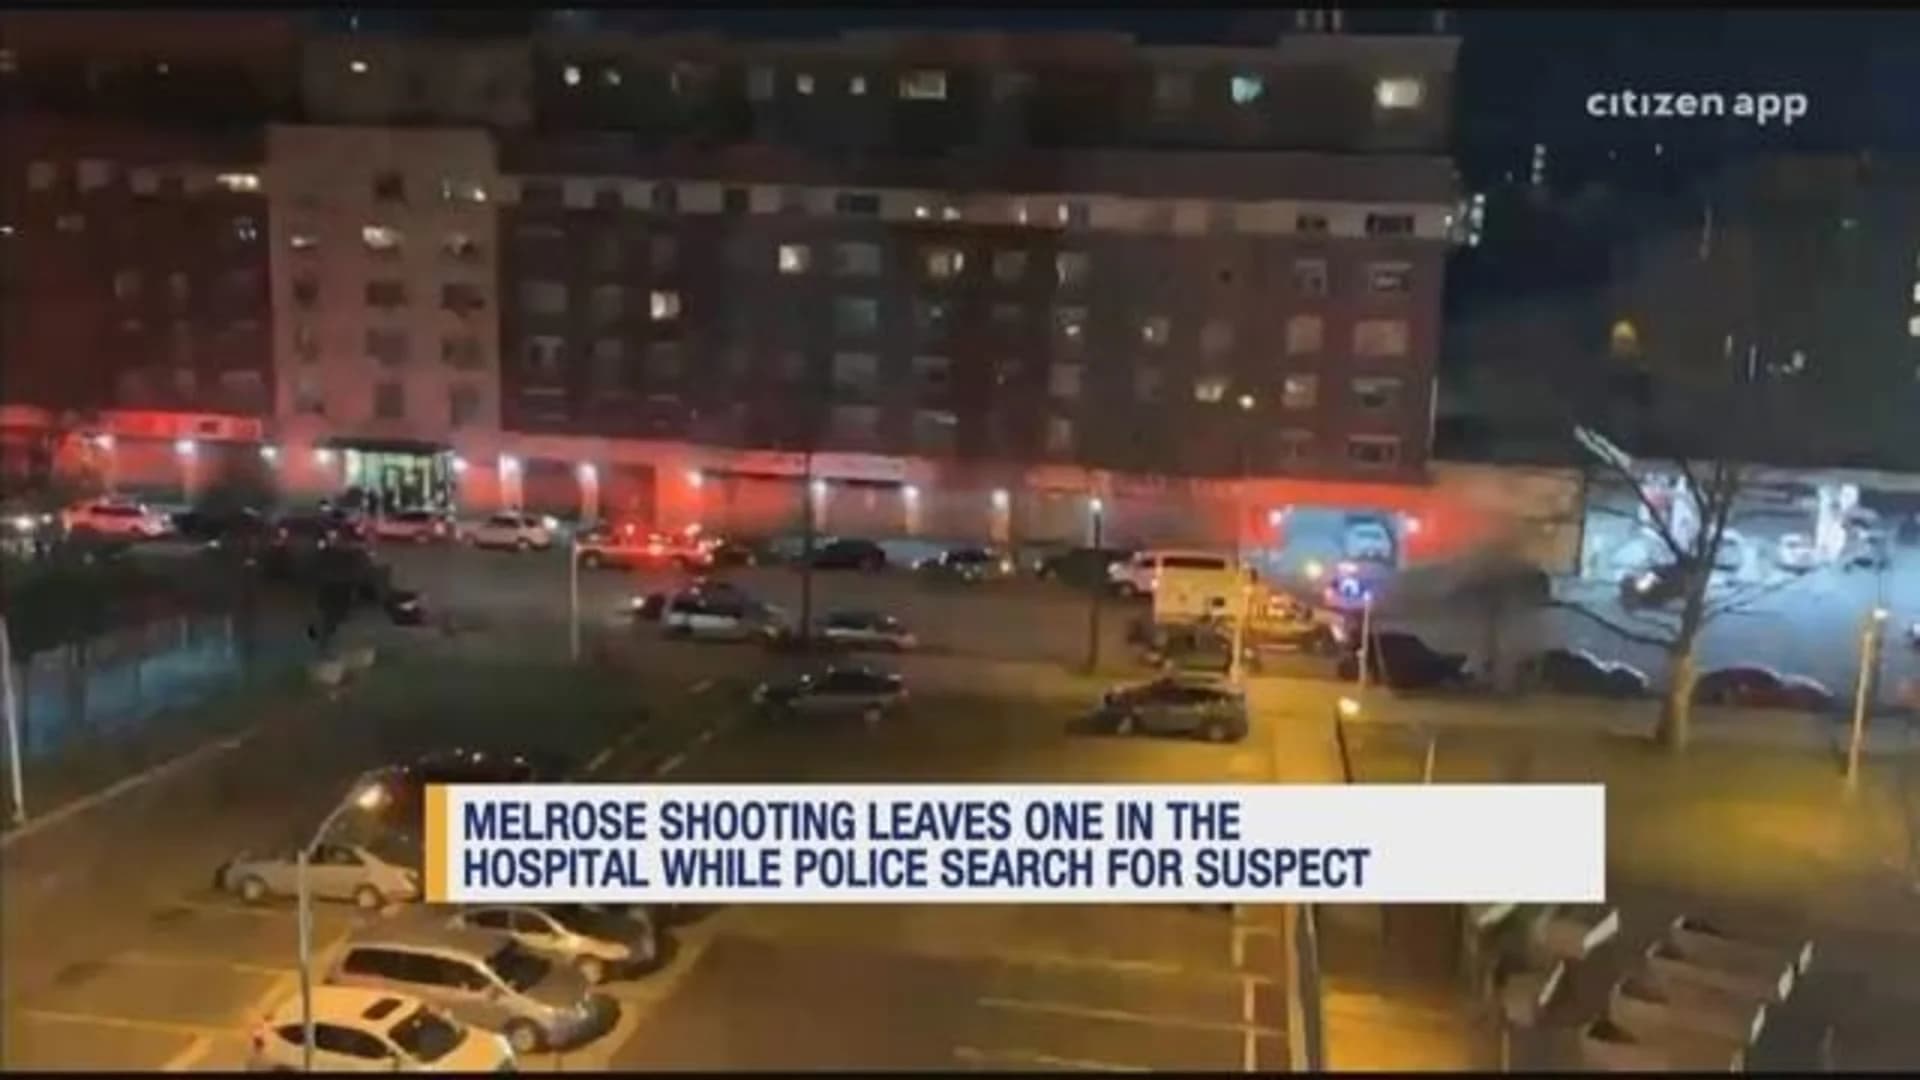 Police: 27-year-old man shot, injured in Melrose apartment